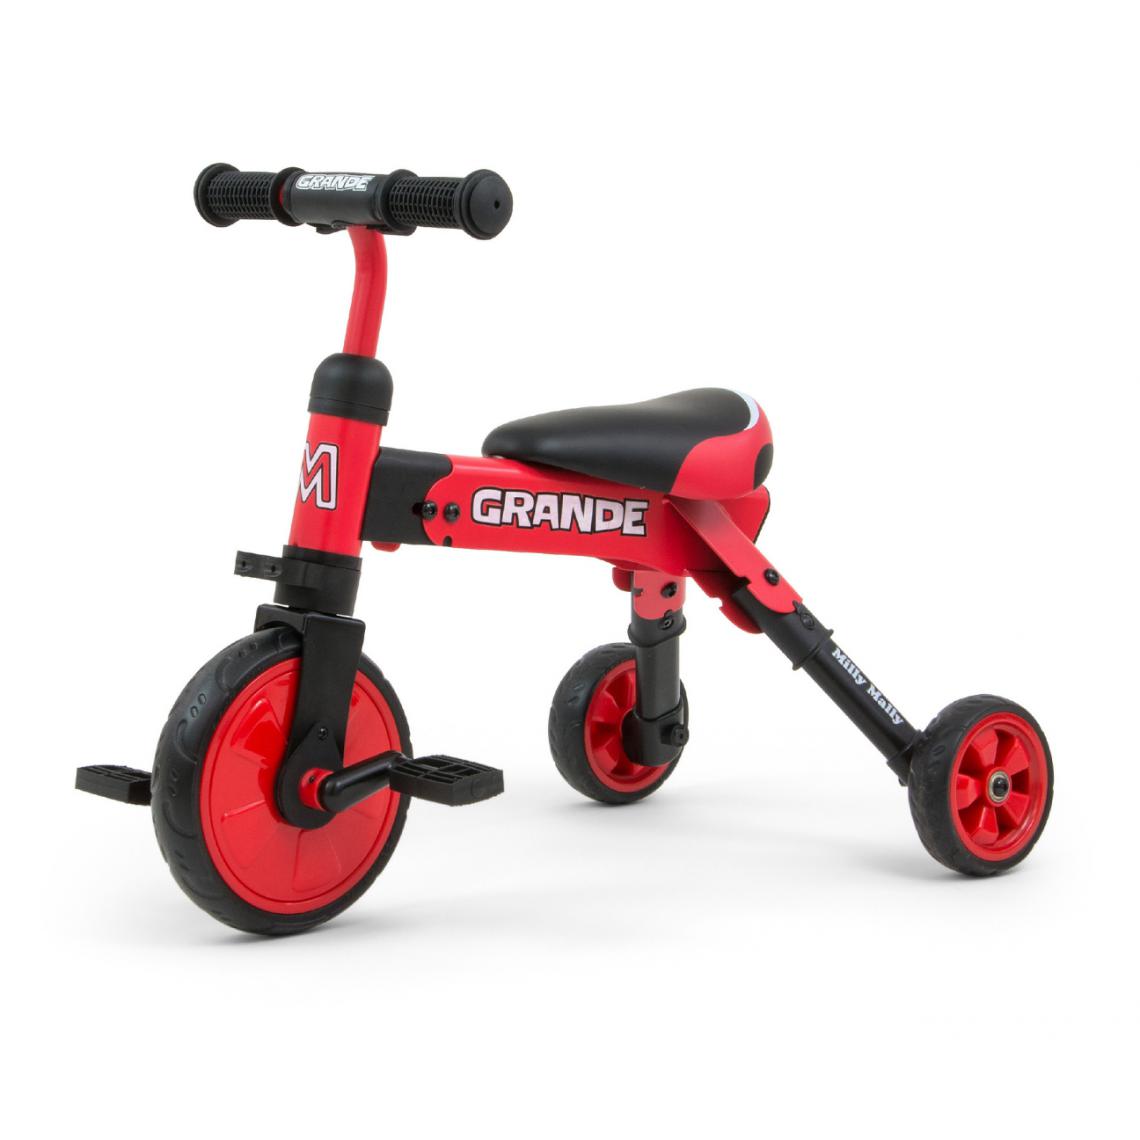 Hucoco - KELLY- Vélo 2en1 pour enfants - ge 12M+ - Pédales détachables - Roues en mousse - Tricycle - Rouge - Tricycle